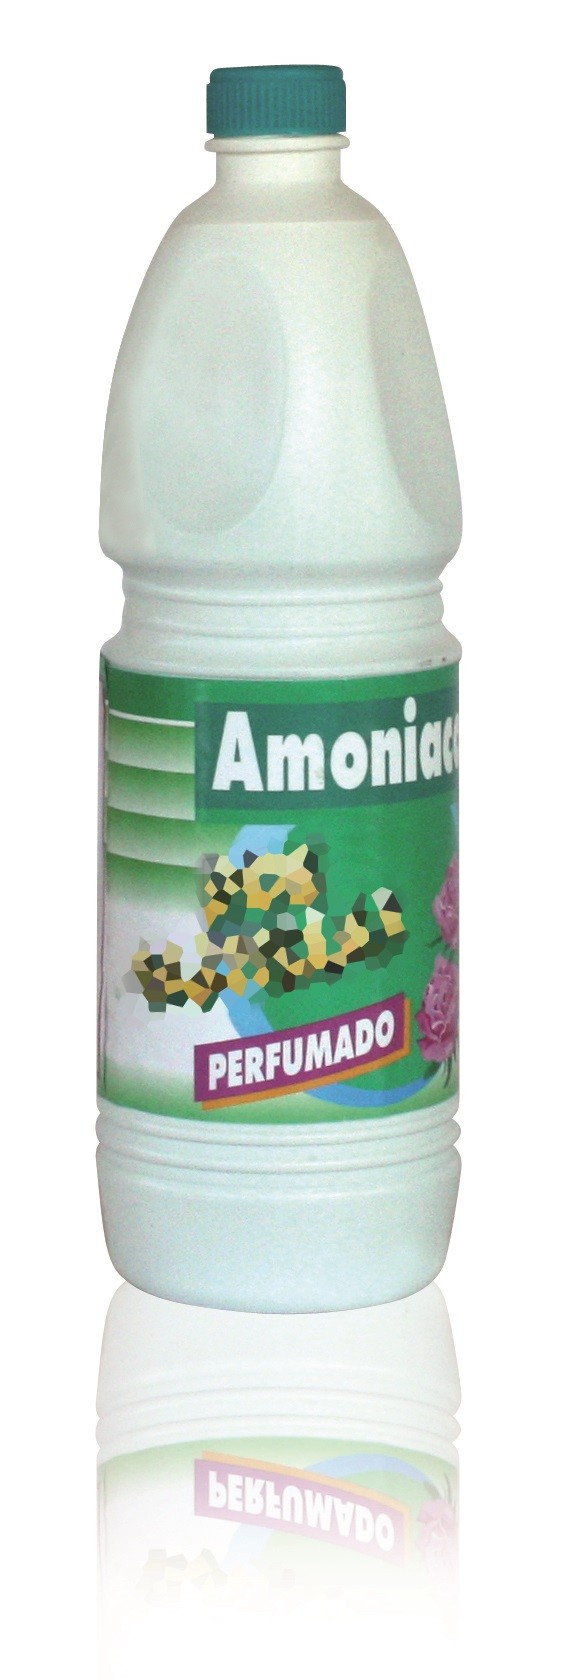 Caja Amoniaco Perfumado (15 botellas de 1L)